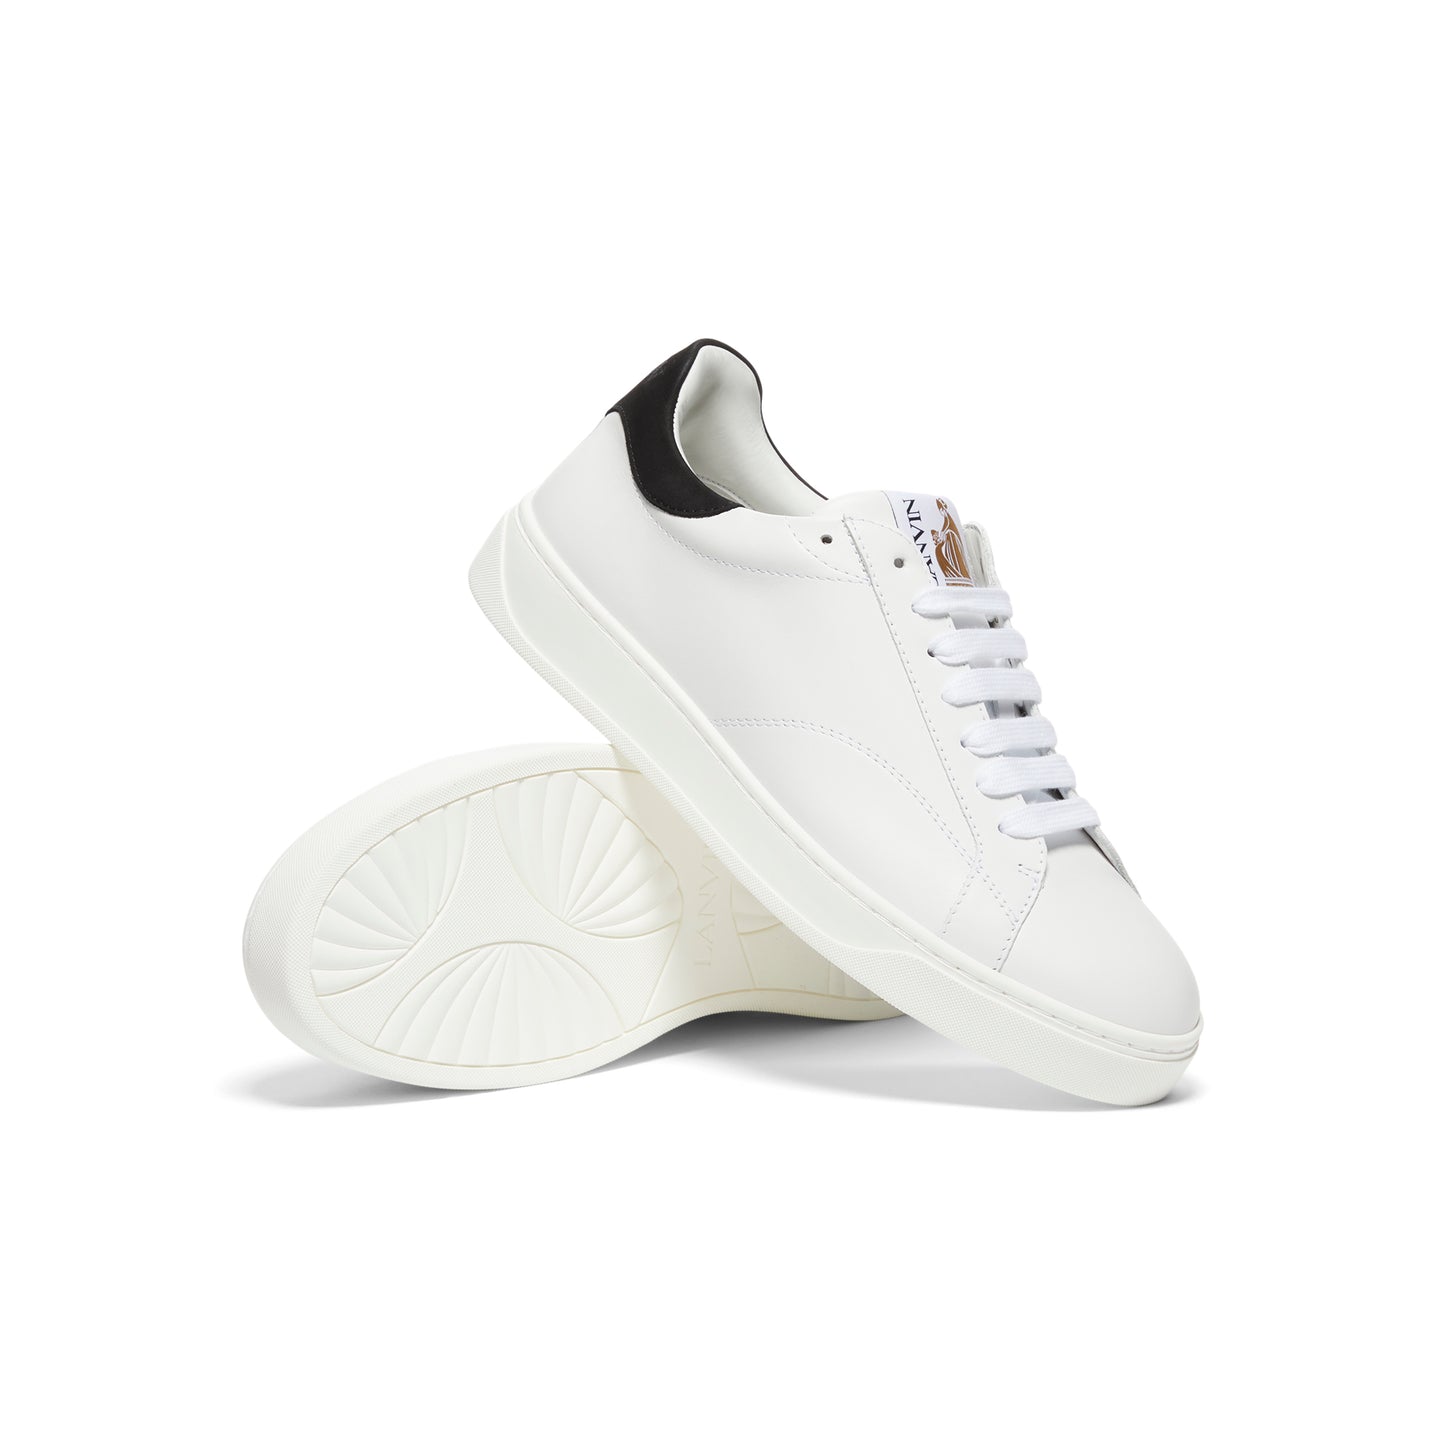 Lanvin DBB0 Sneakers (White/Black)